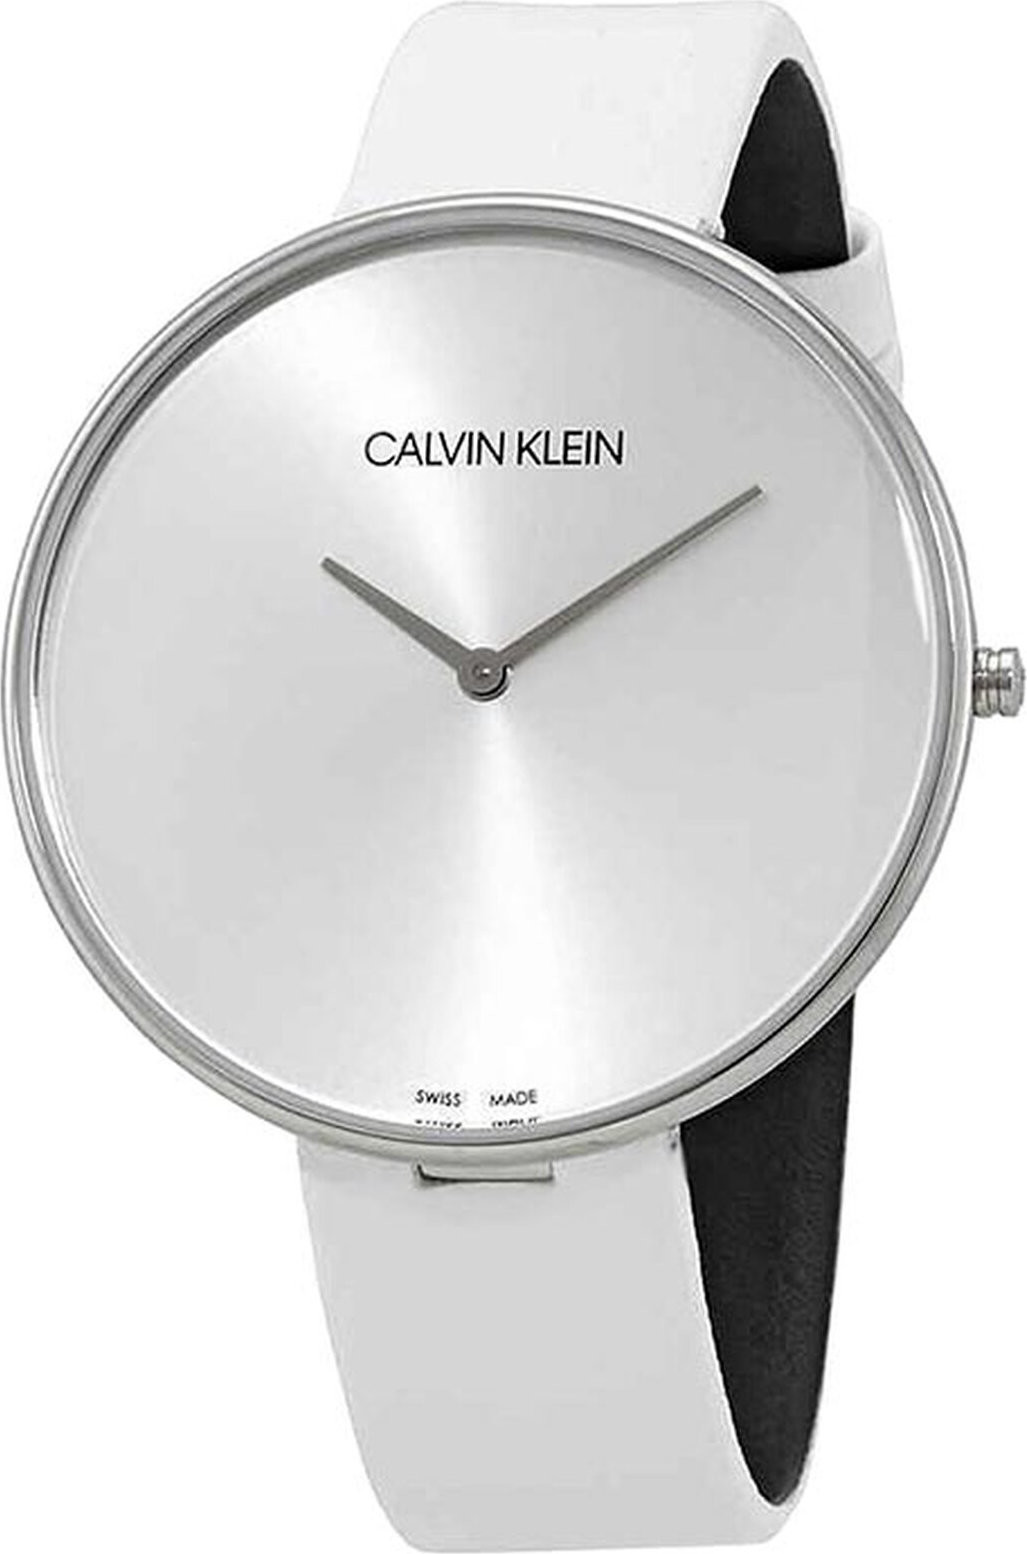 Hodinky Calvin Klein Lady K8Y231L6 White/Silver